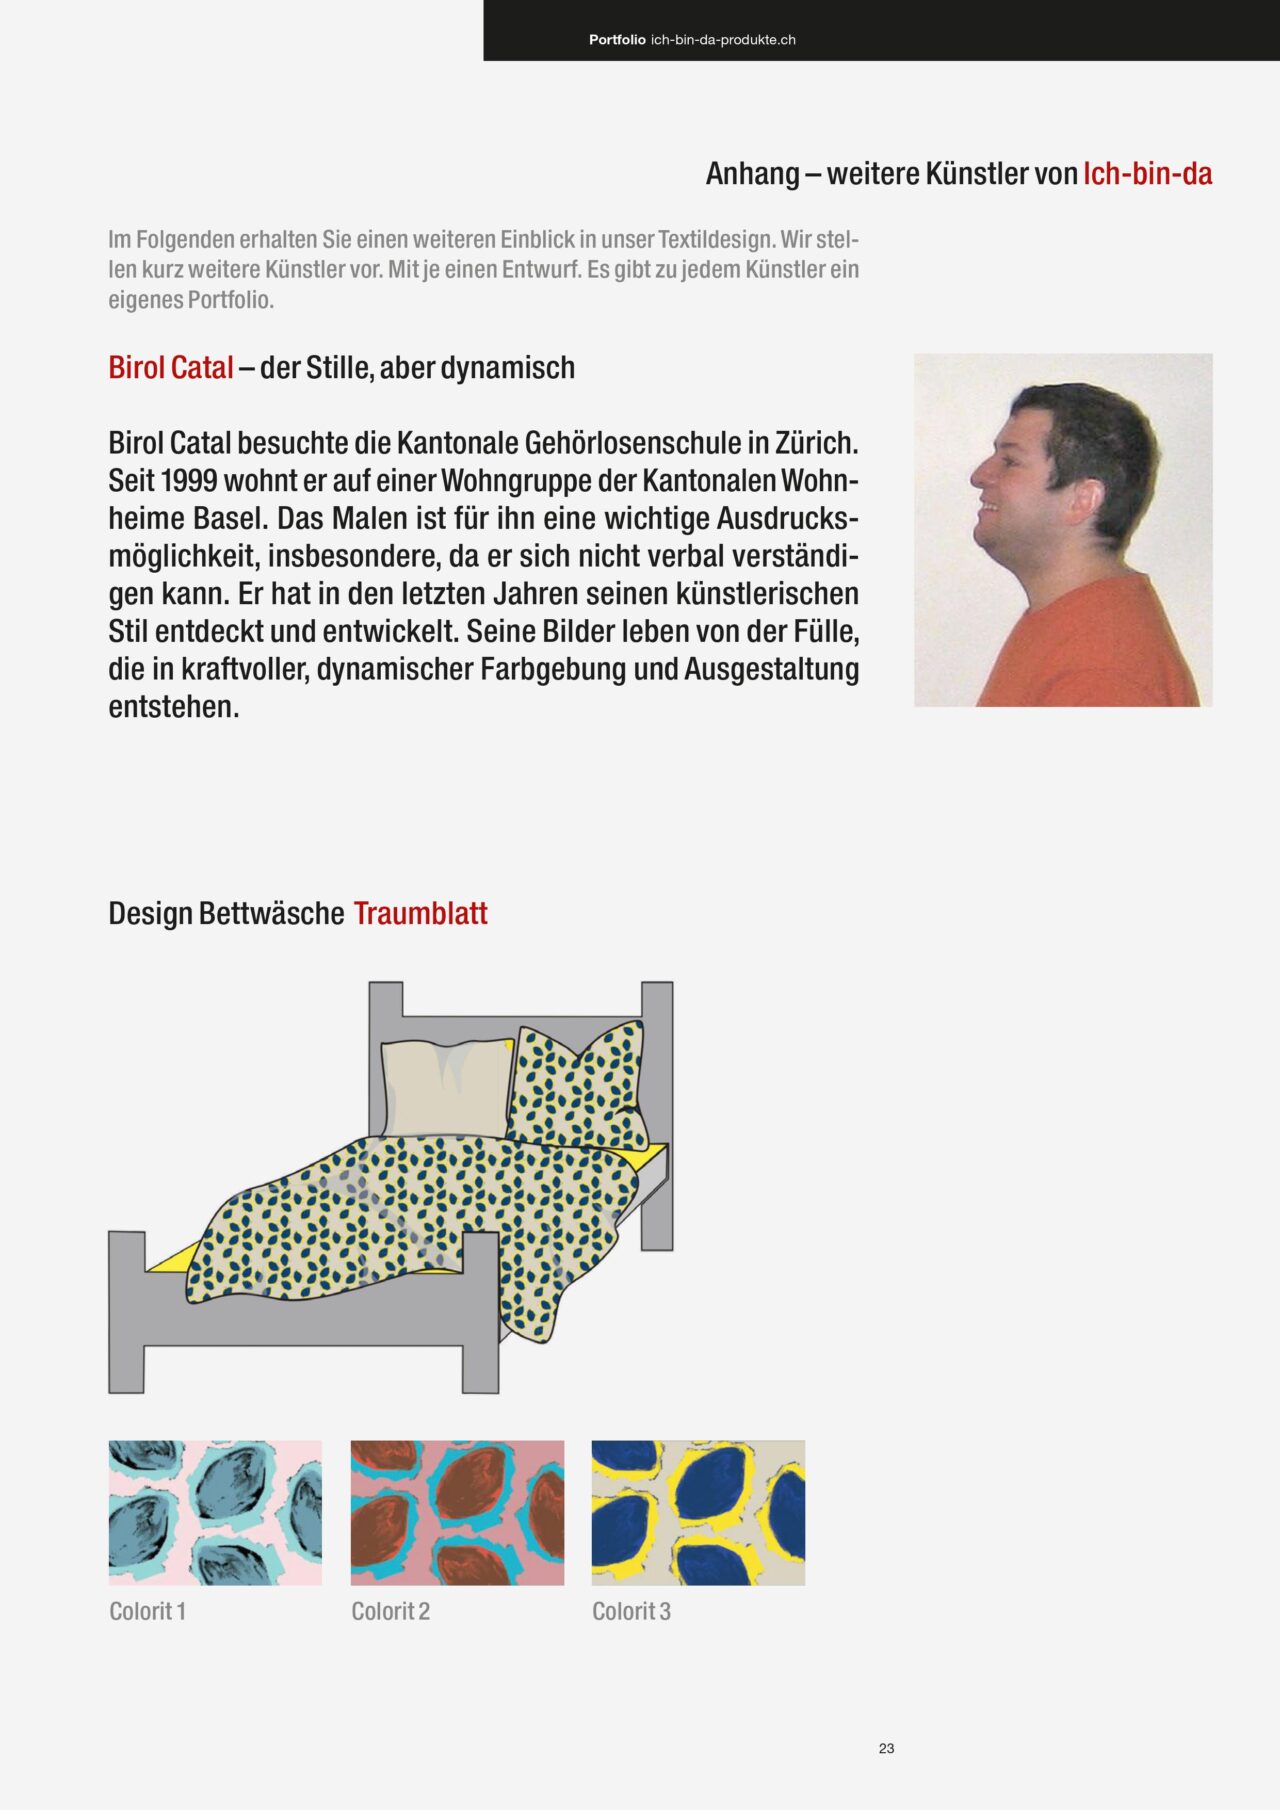 textildesign-menschen-mit-behinderungen-kunst-art-brut-basel-schweiz-elias-dahler